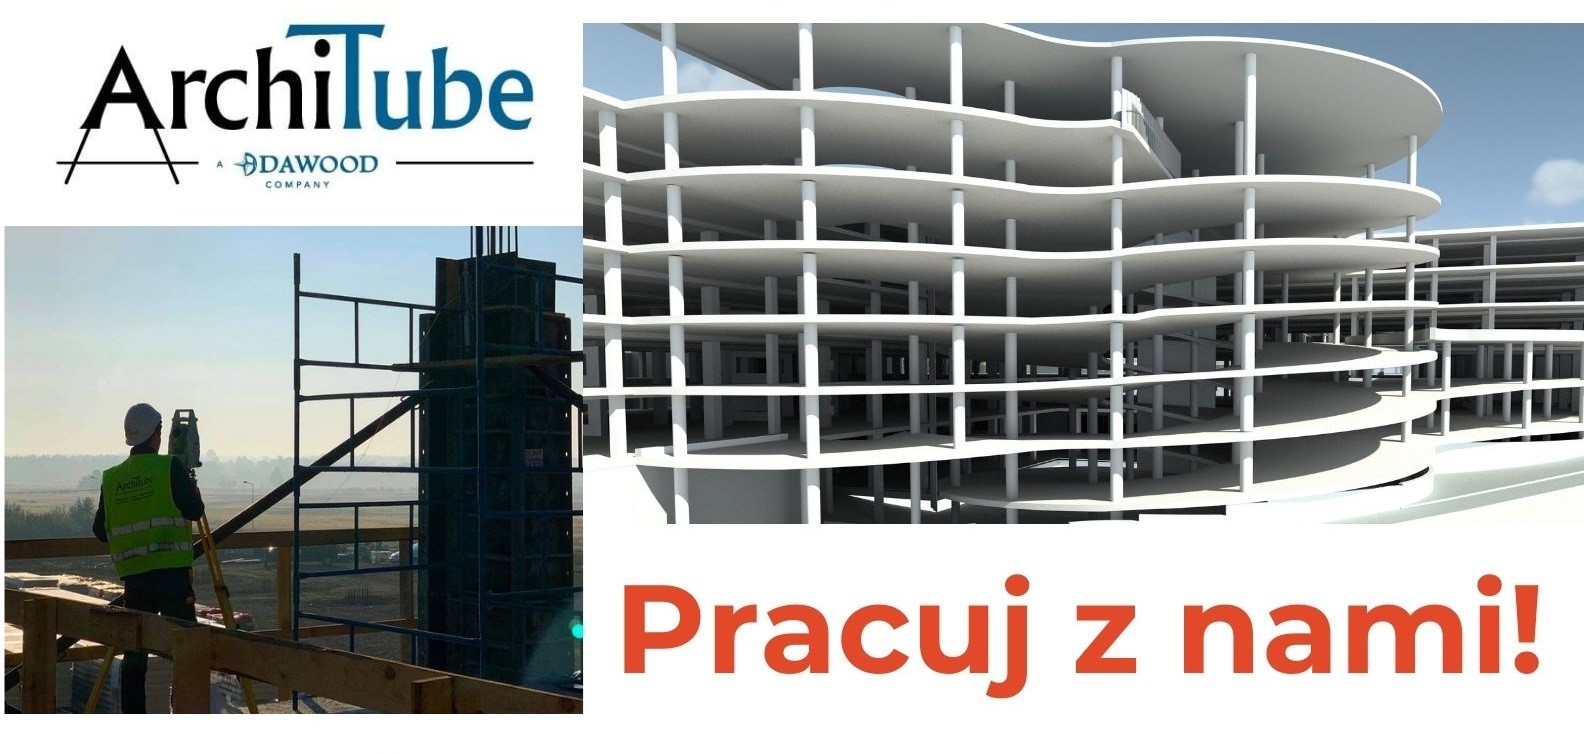 Zdjęcia przedstawia logo firmy ArchiTube, wielopoziomowego parkingu i budowlańca w kasku przy urządzeniach geodezyjnych.